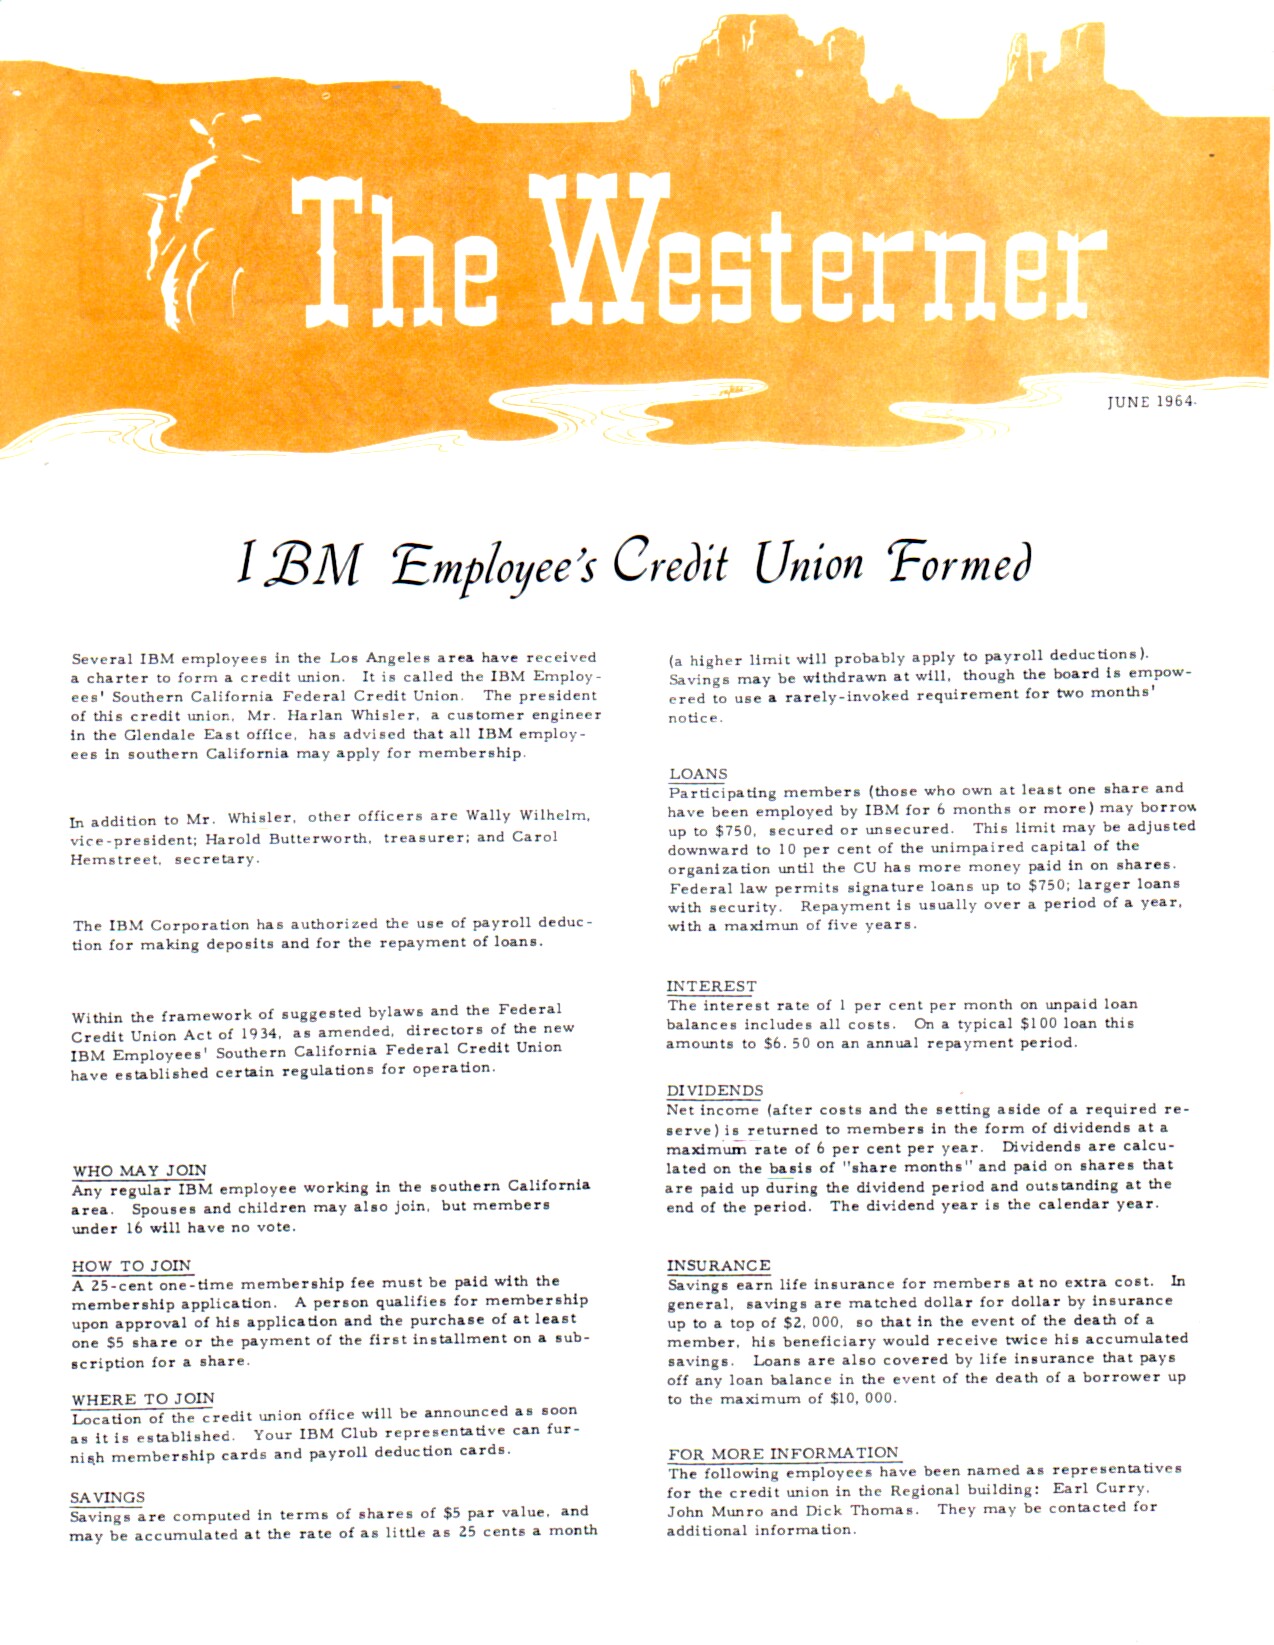 The Westerner flyer